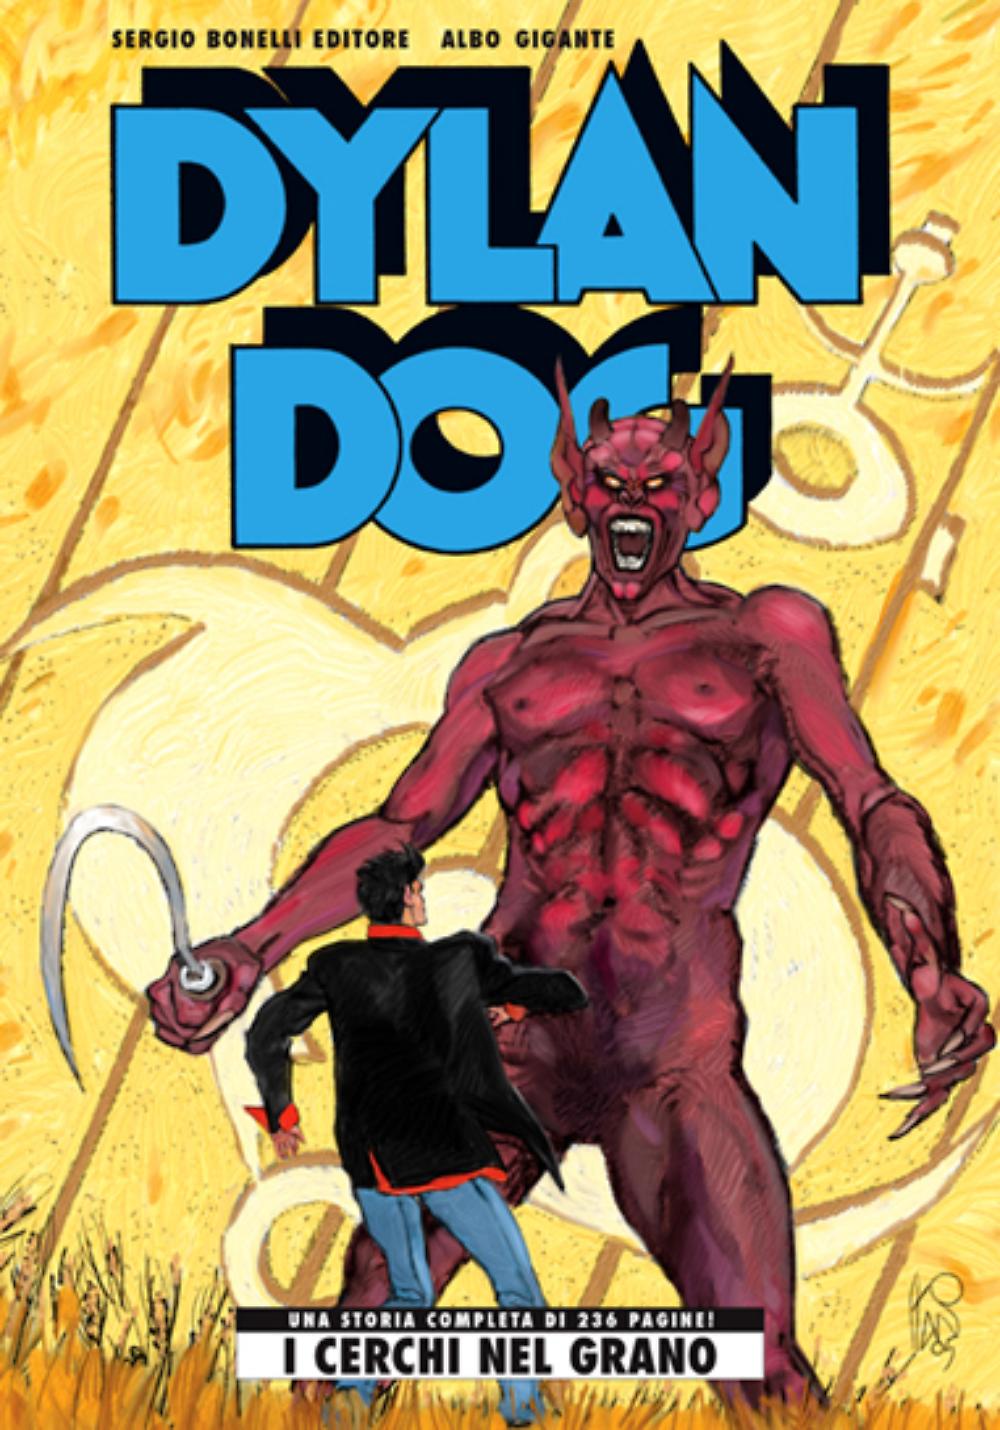 DPBOT – Fumetto – Bonelli – Dylan Dog Gigante # 14...